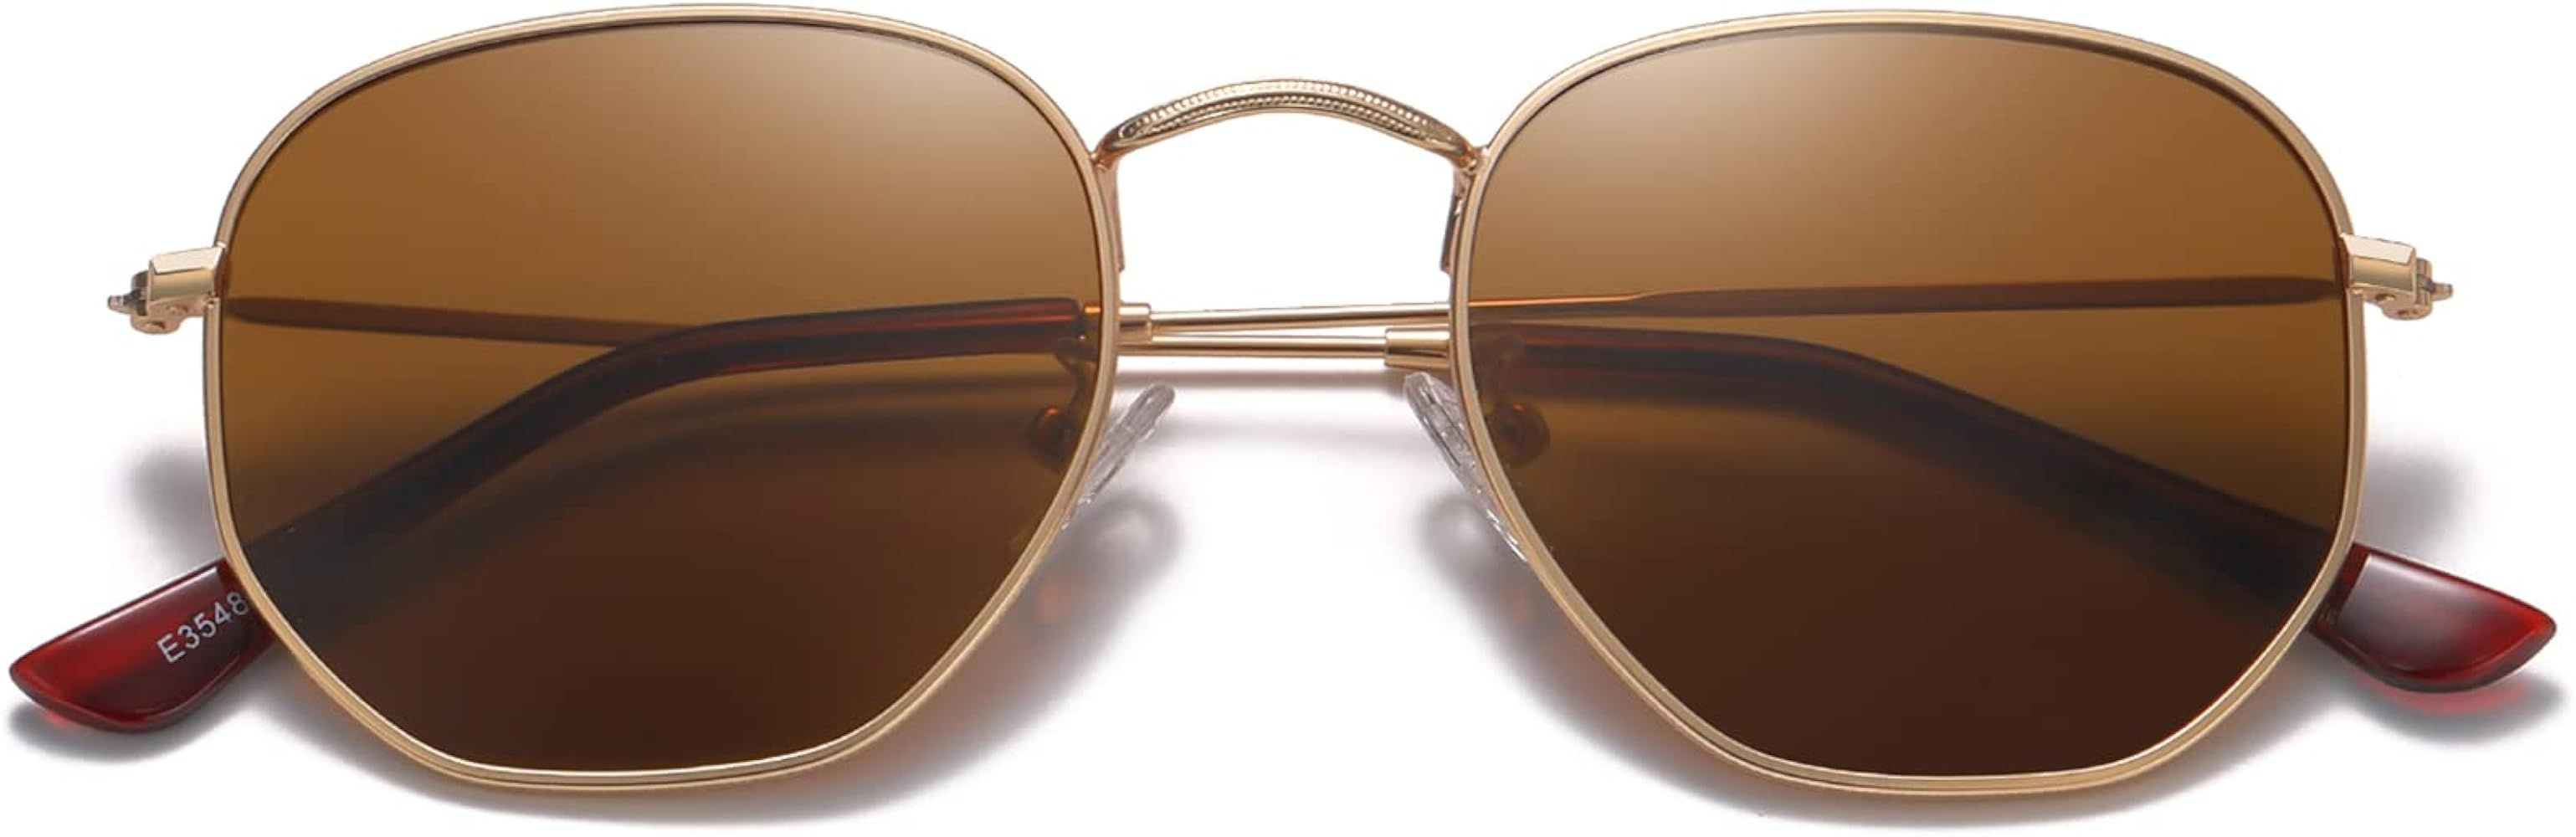 MEETSUN Polarized Hexagon Sunglasses for Women Men Polygon Small Square Sun Glasses UV400 Protect... | Amazon (US)